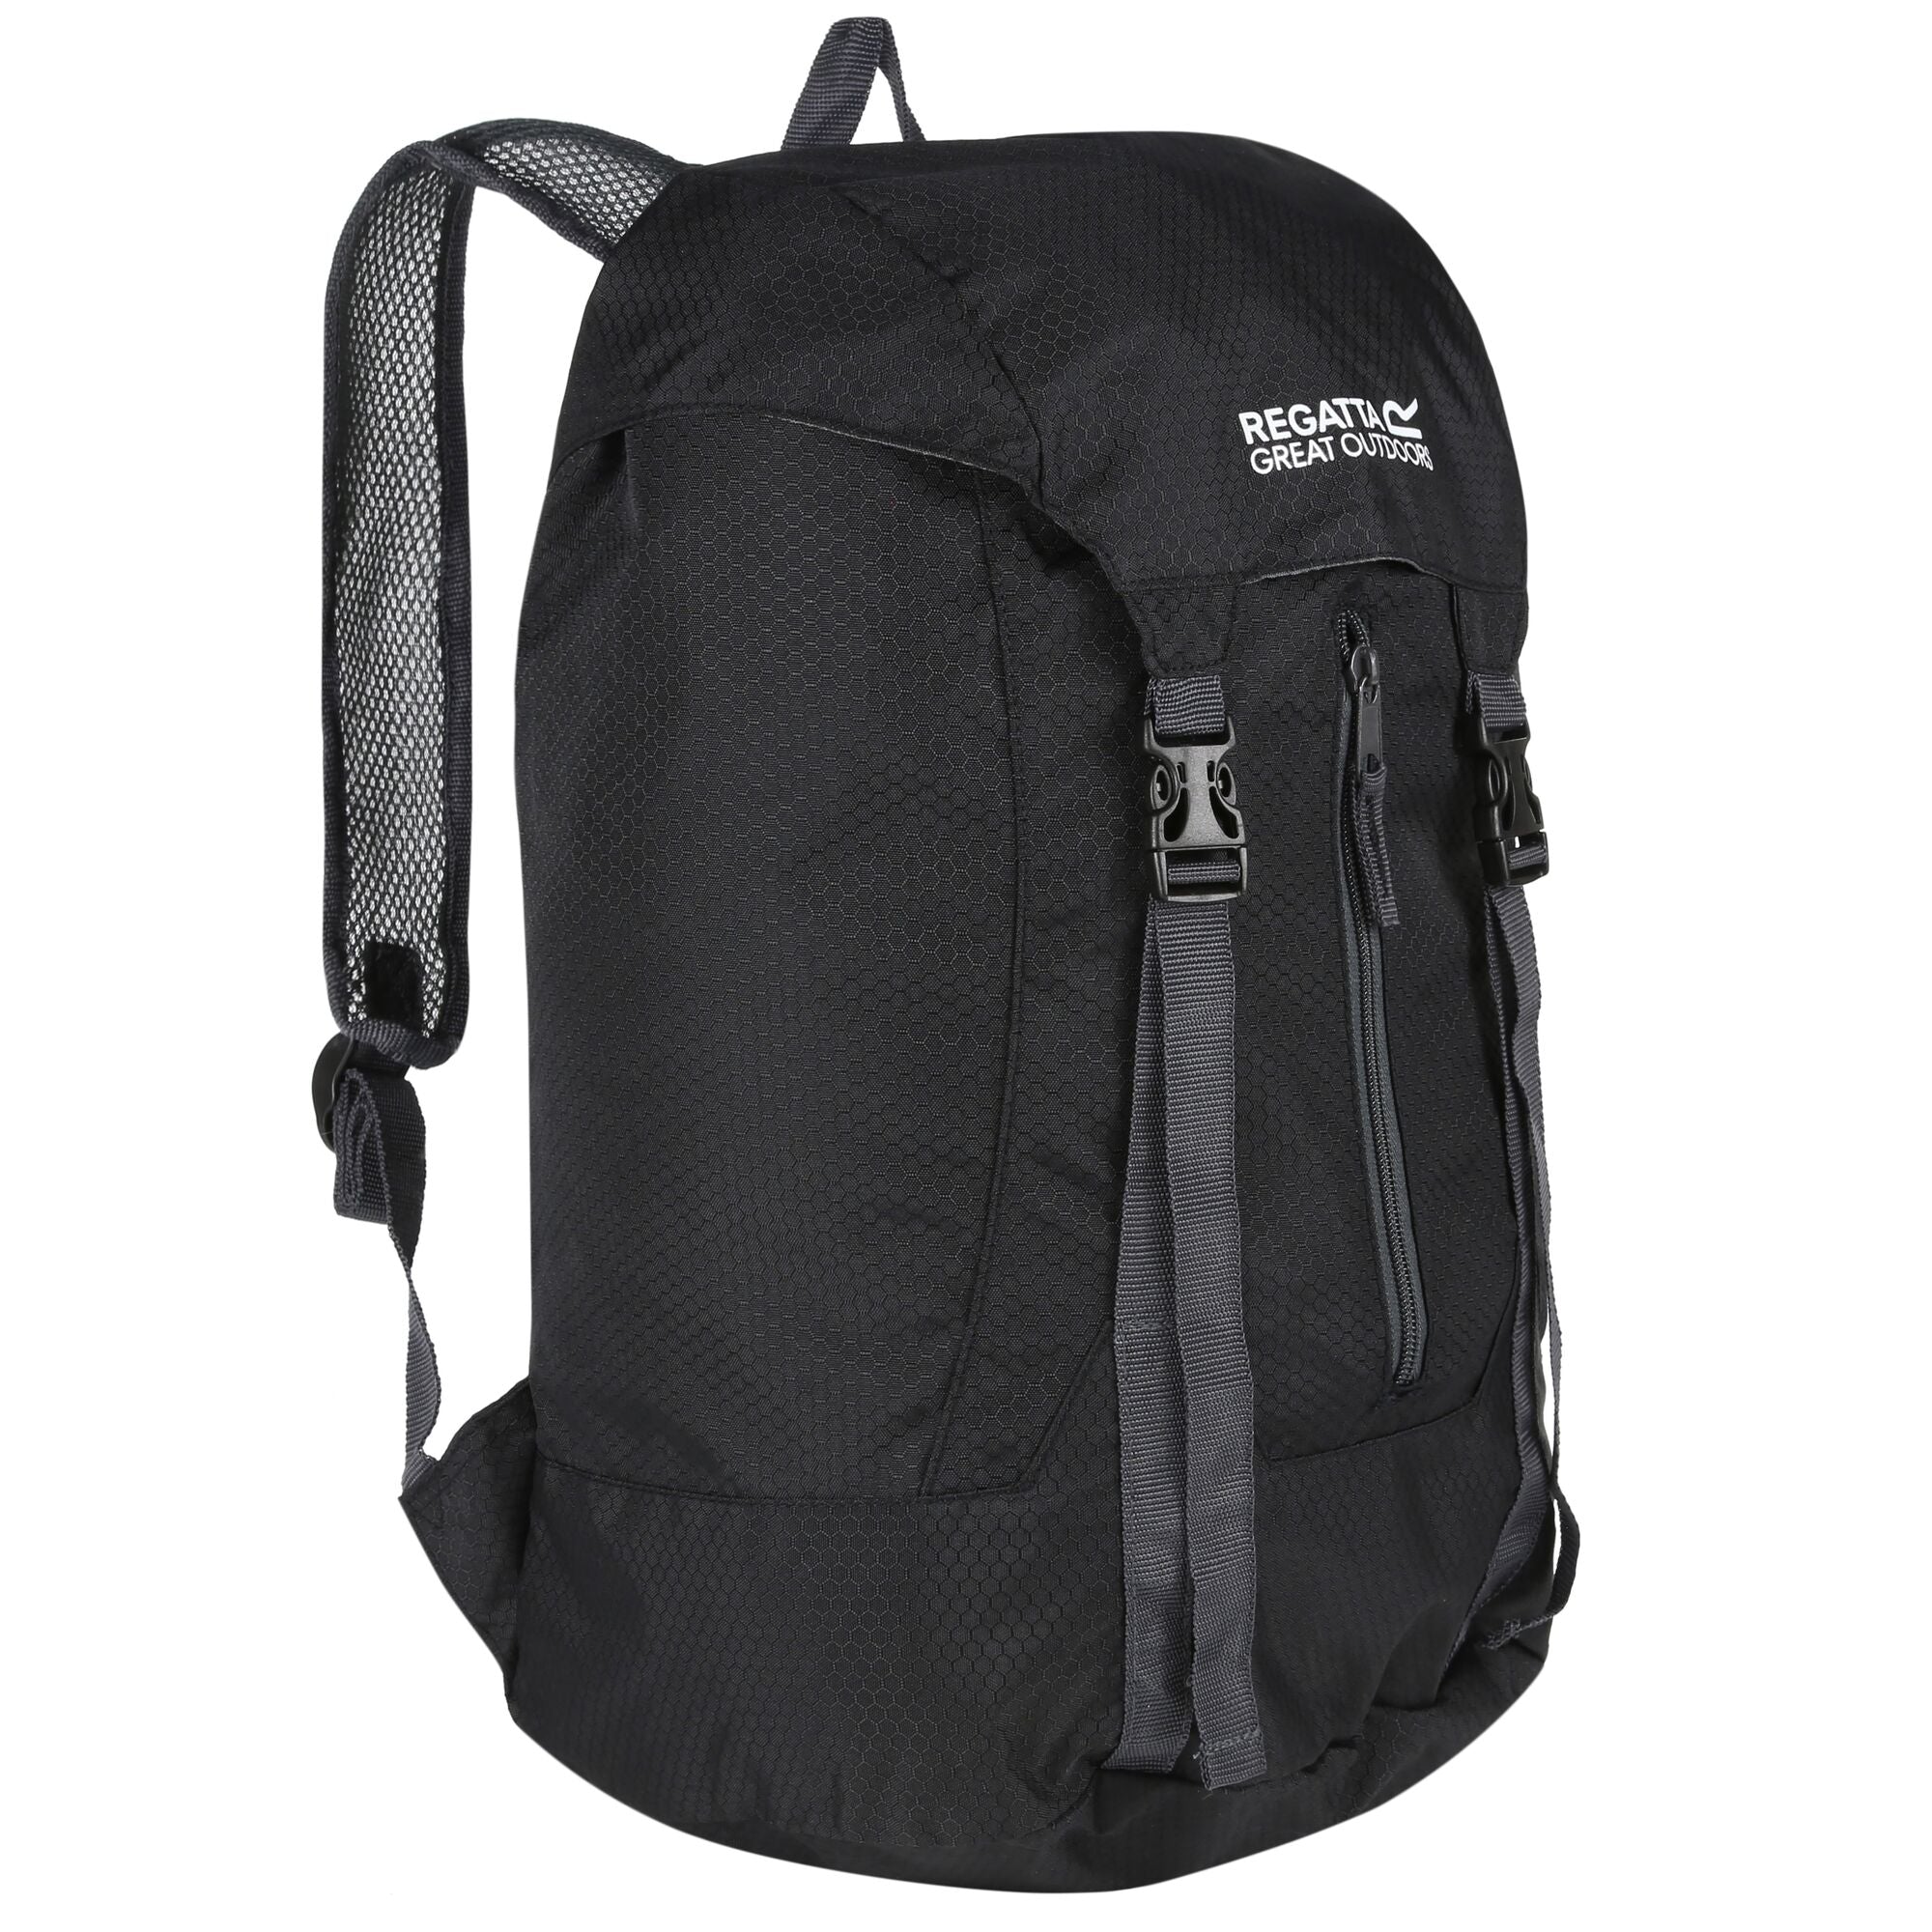 Regatta Easypack II 25L Packaway Backpack